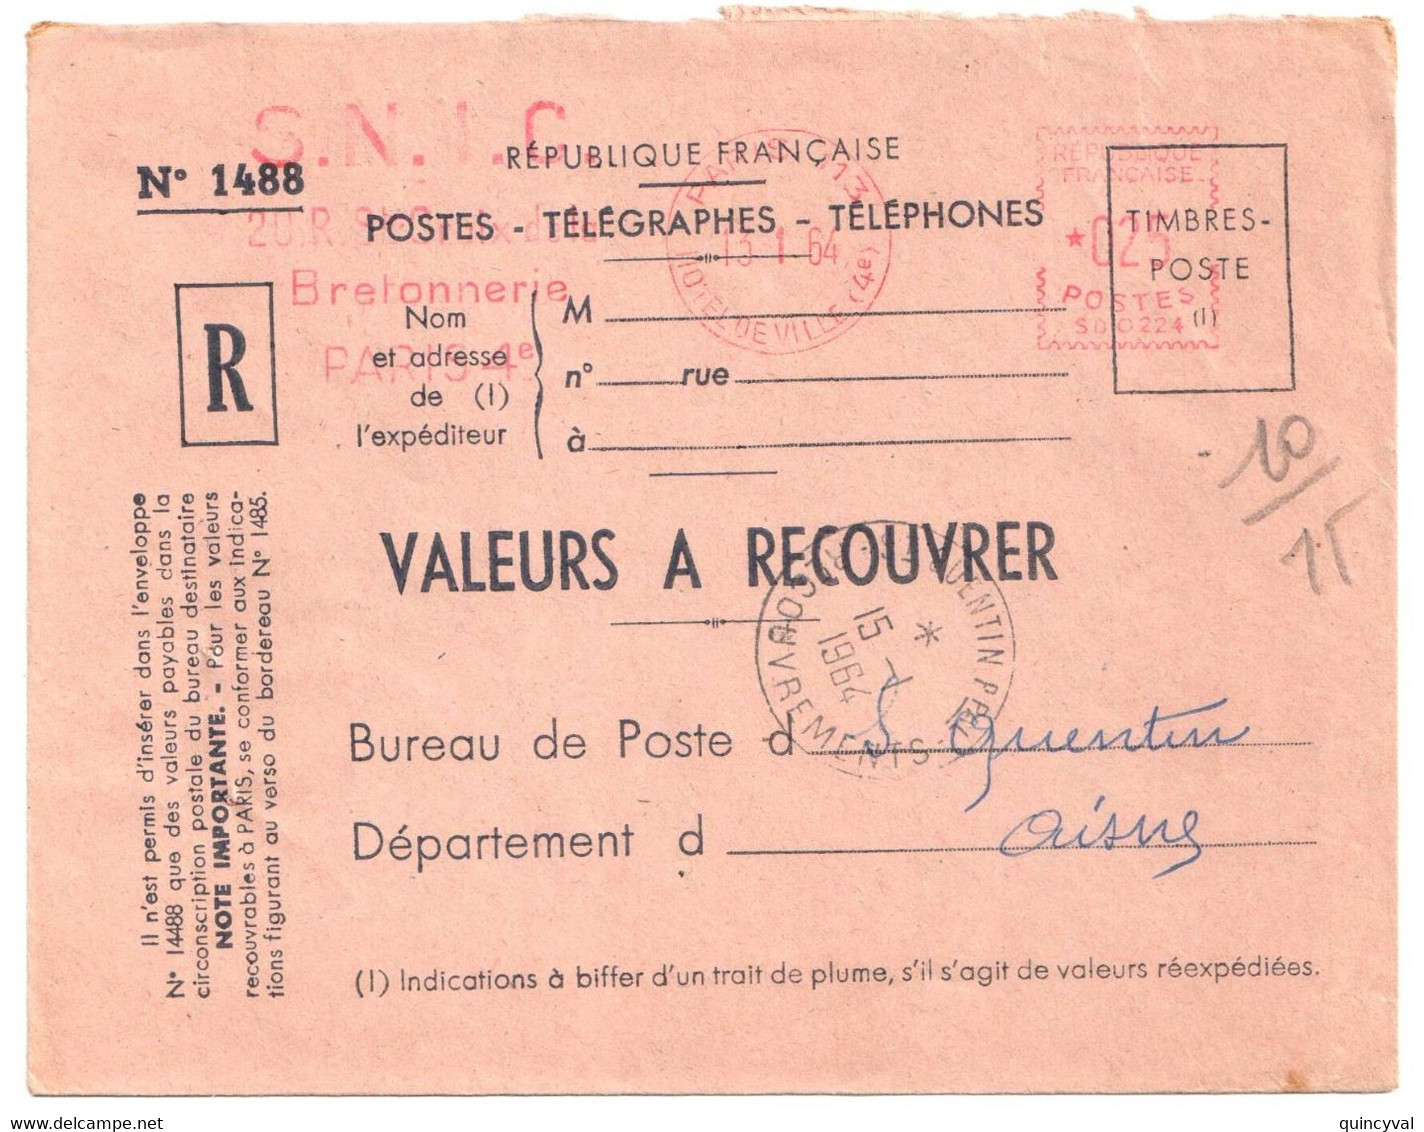 PARIS 113 Valeurs à Recouvrer Env 1488 Ob 13 1 1964 EMA 25c SD0224 Dest St QUENTIN Ppal RECOUVREMENTS   Aisne - EMA (Print Machine)